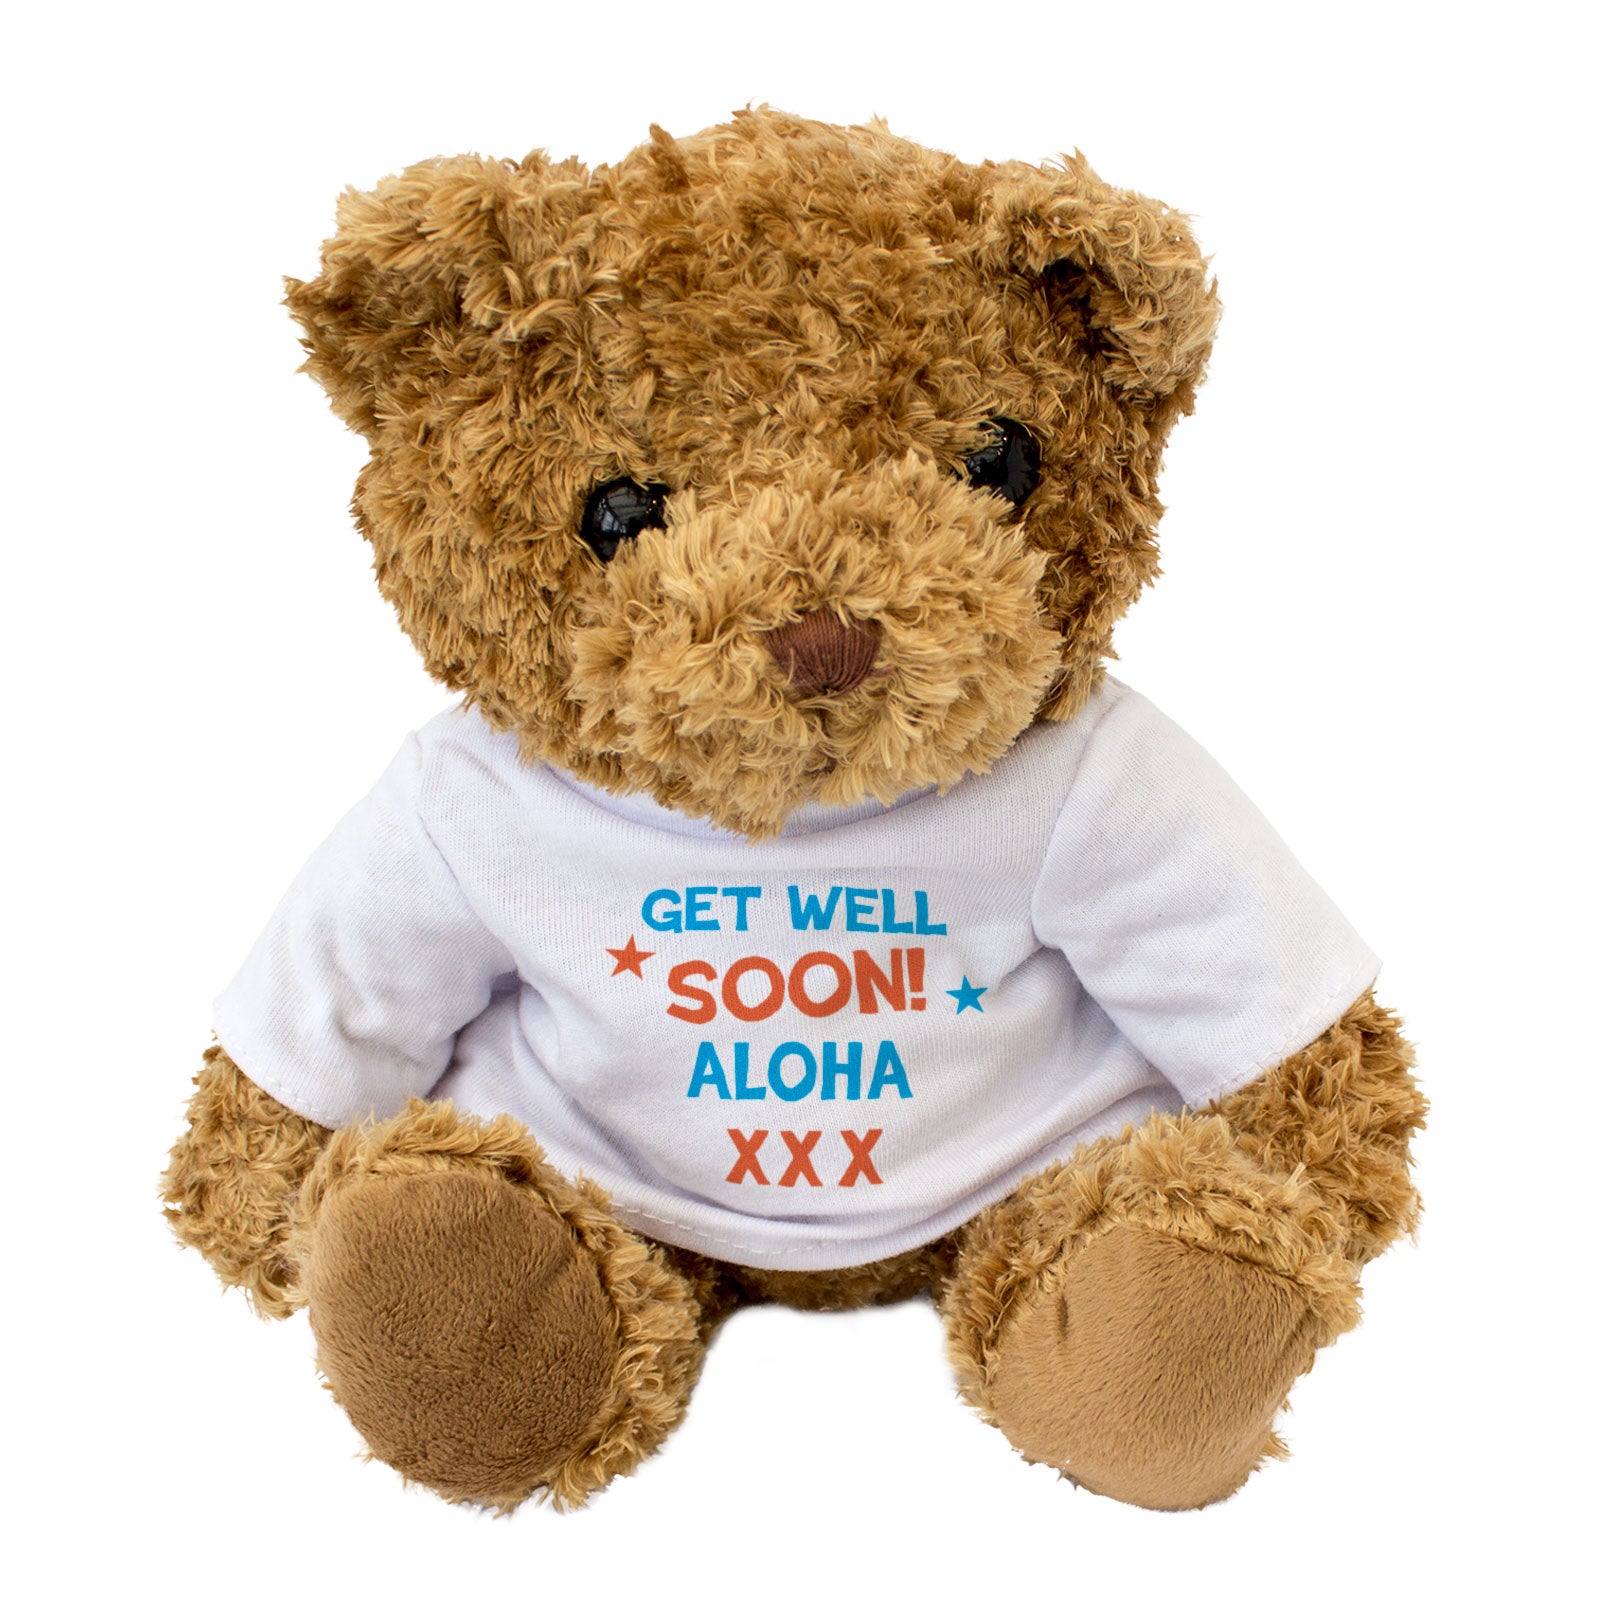 Get Well Soon Aloha - Teddy Bear